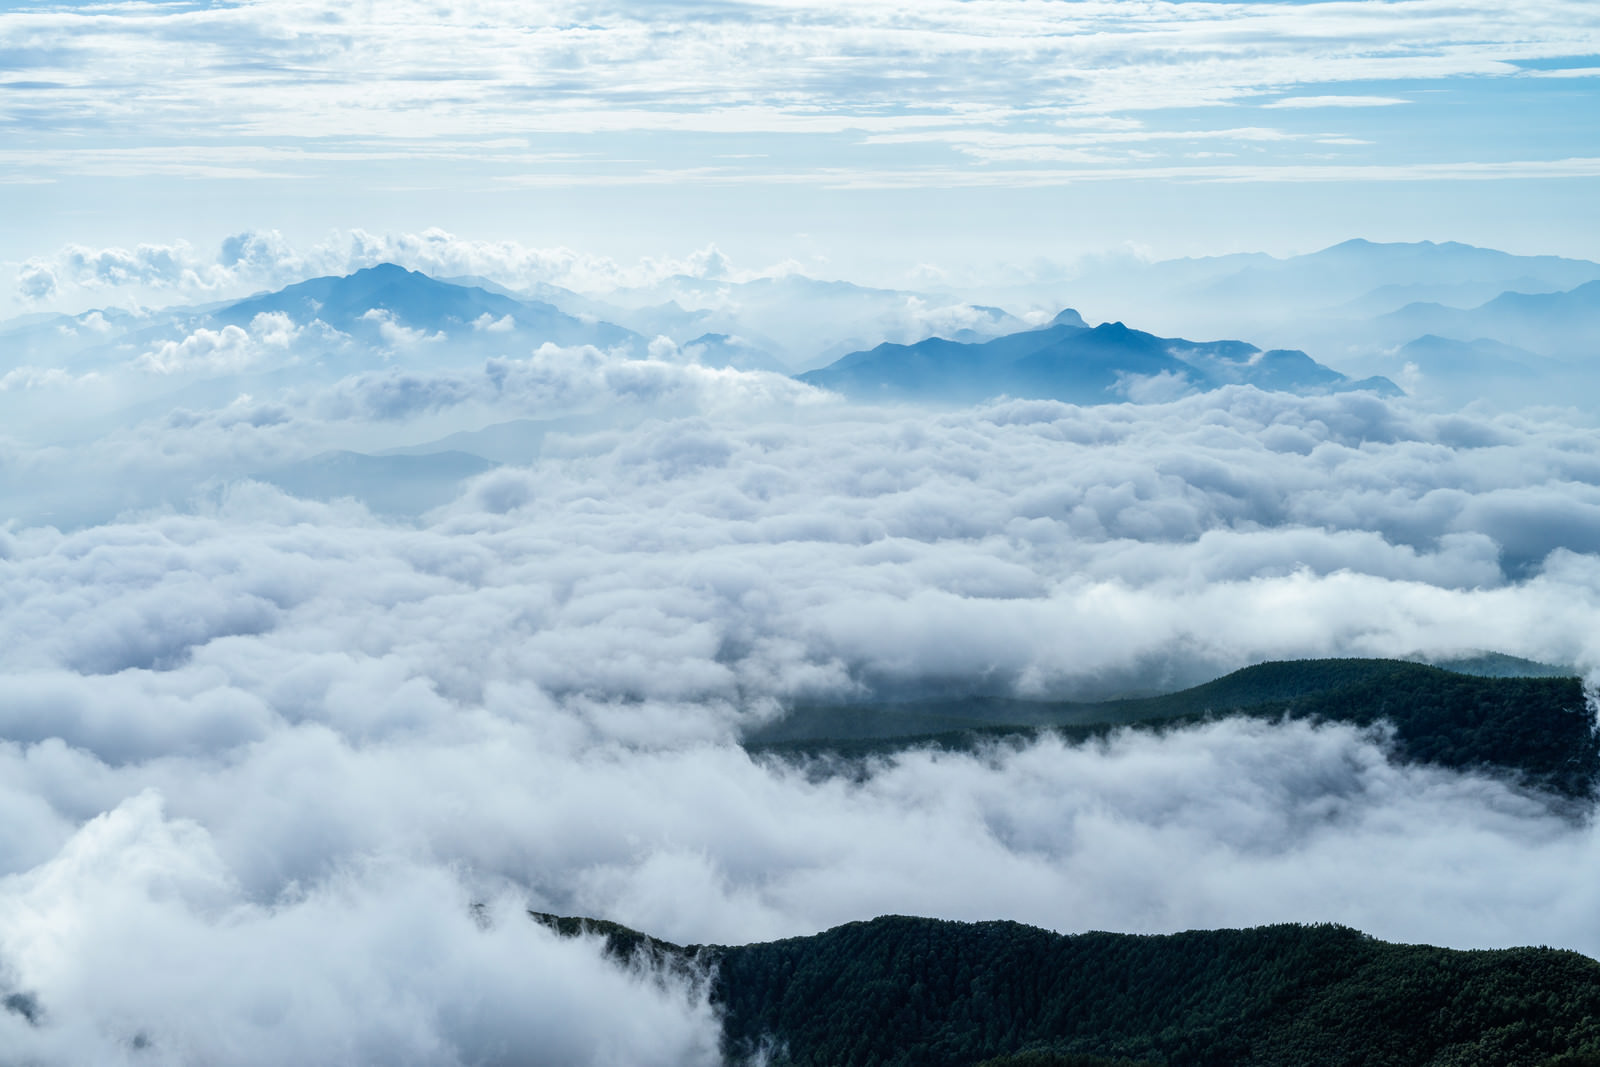 雲海の中に浮かぶ山々 にゅう の無料の写真素材 フリー素材 をダウンロード ぱくたそ